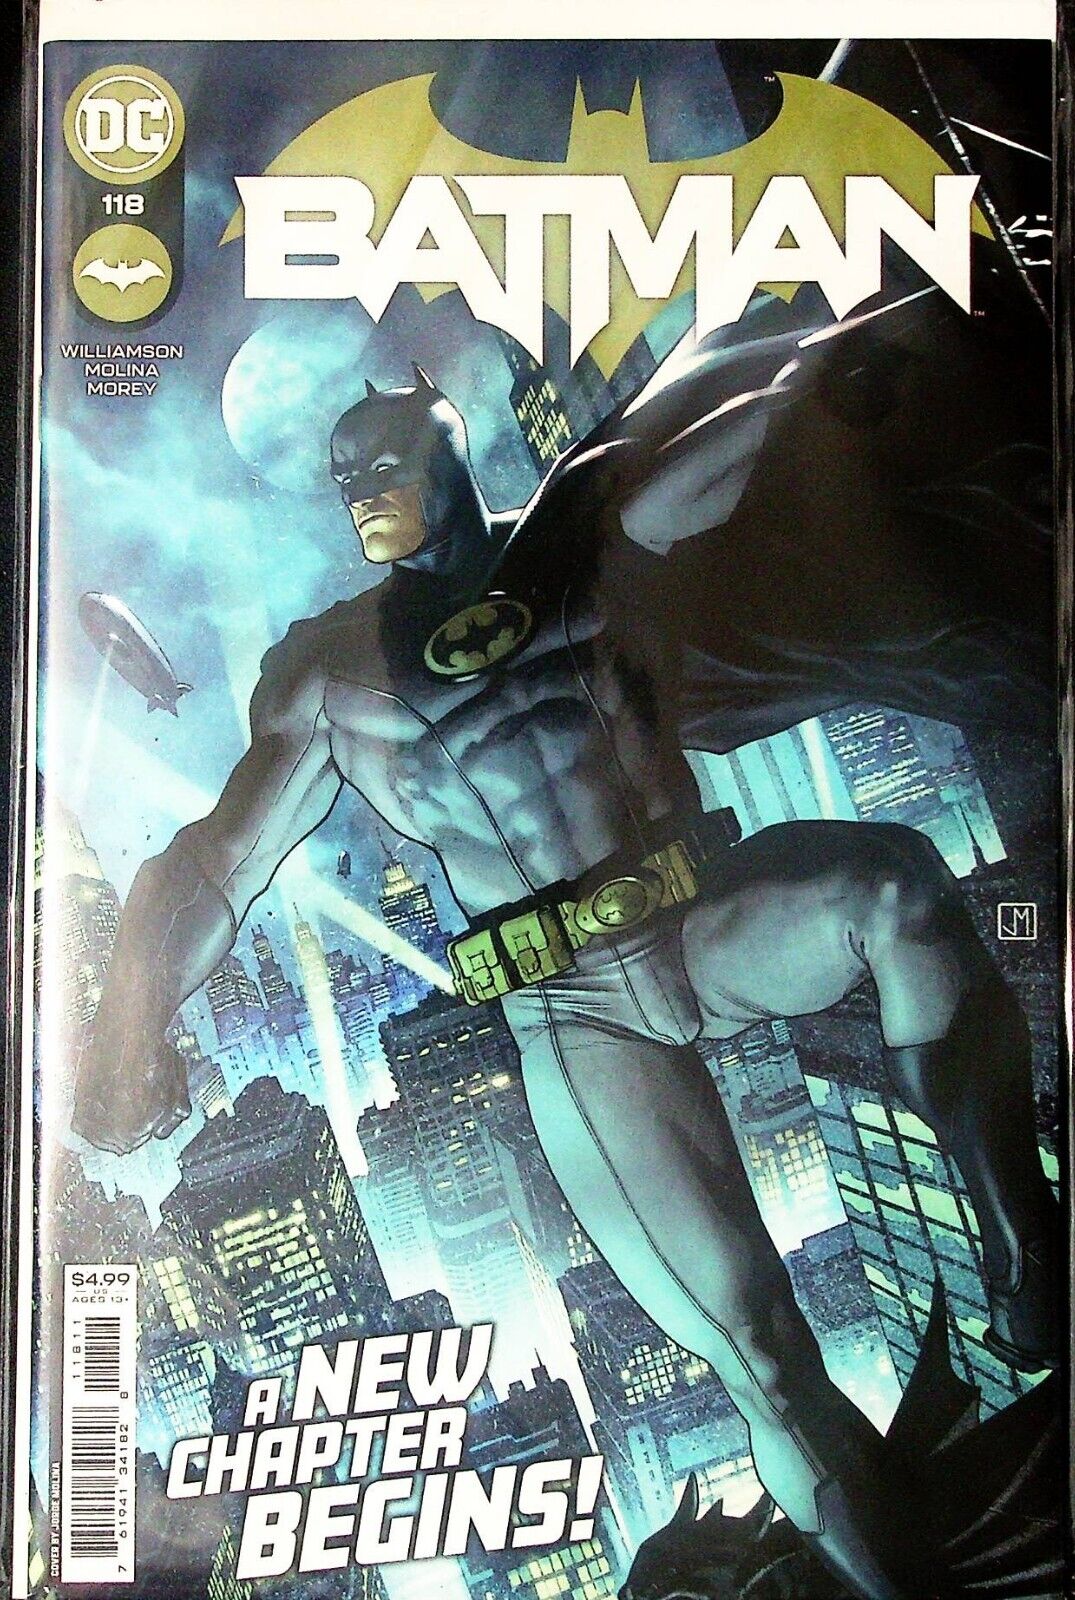 39145: DC Comics BATMAN #118 NM- Grade